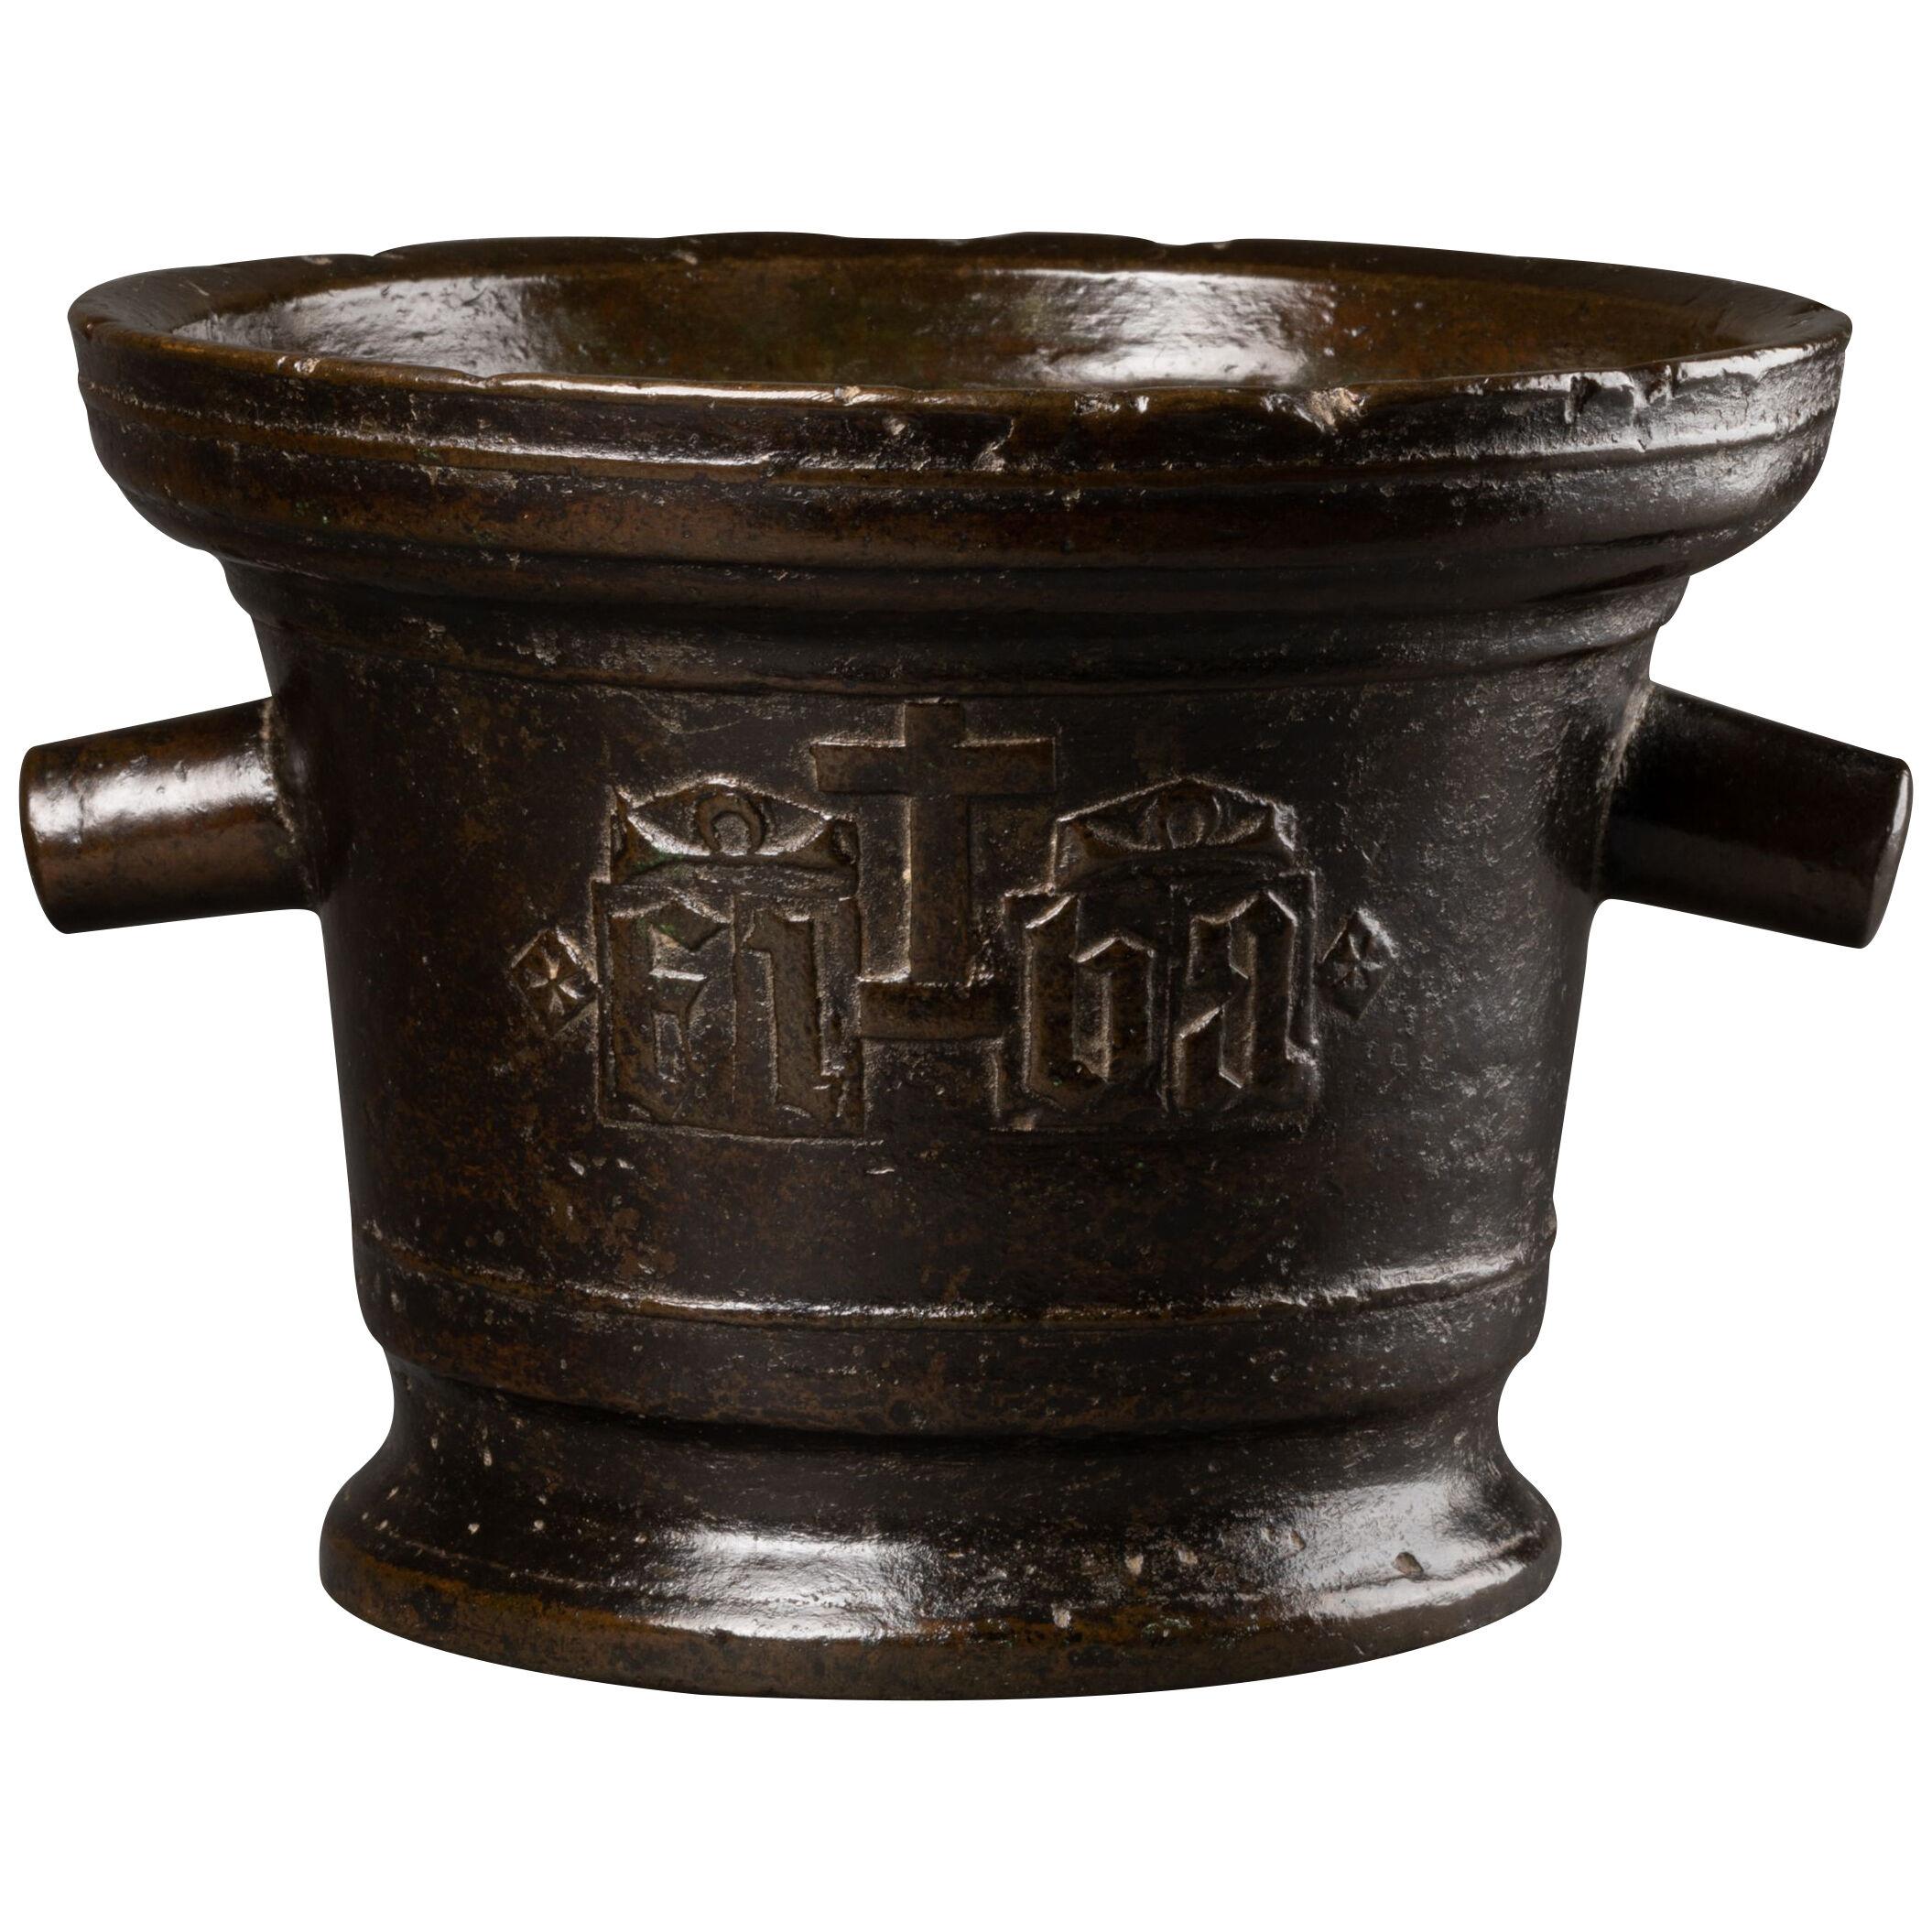 Bronze mortar - France - Circa 1500